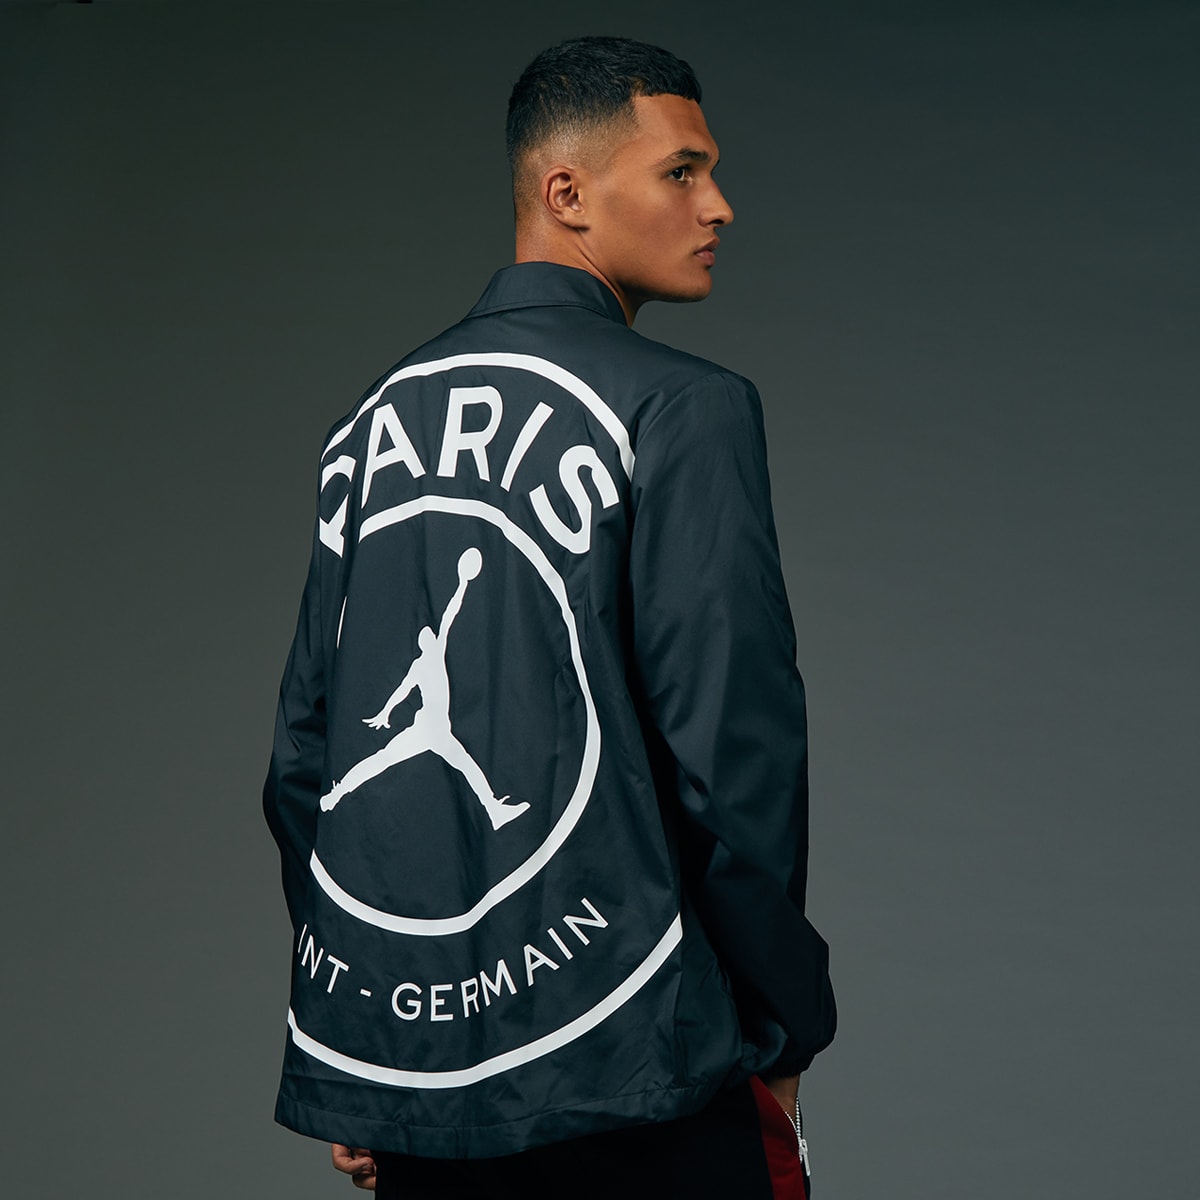 Jordan x Paris Saint-Germain Coach Jacket (Black & White) | END. Launches